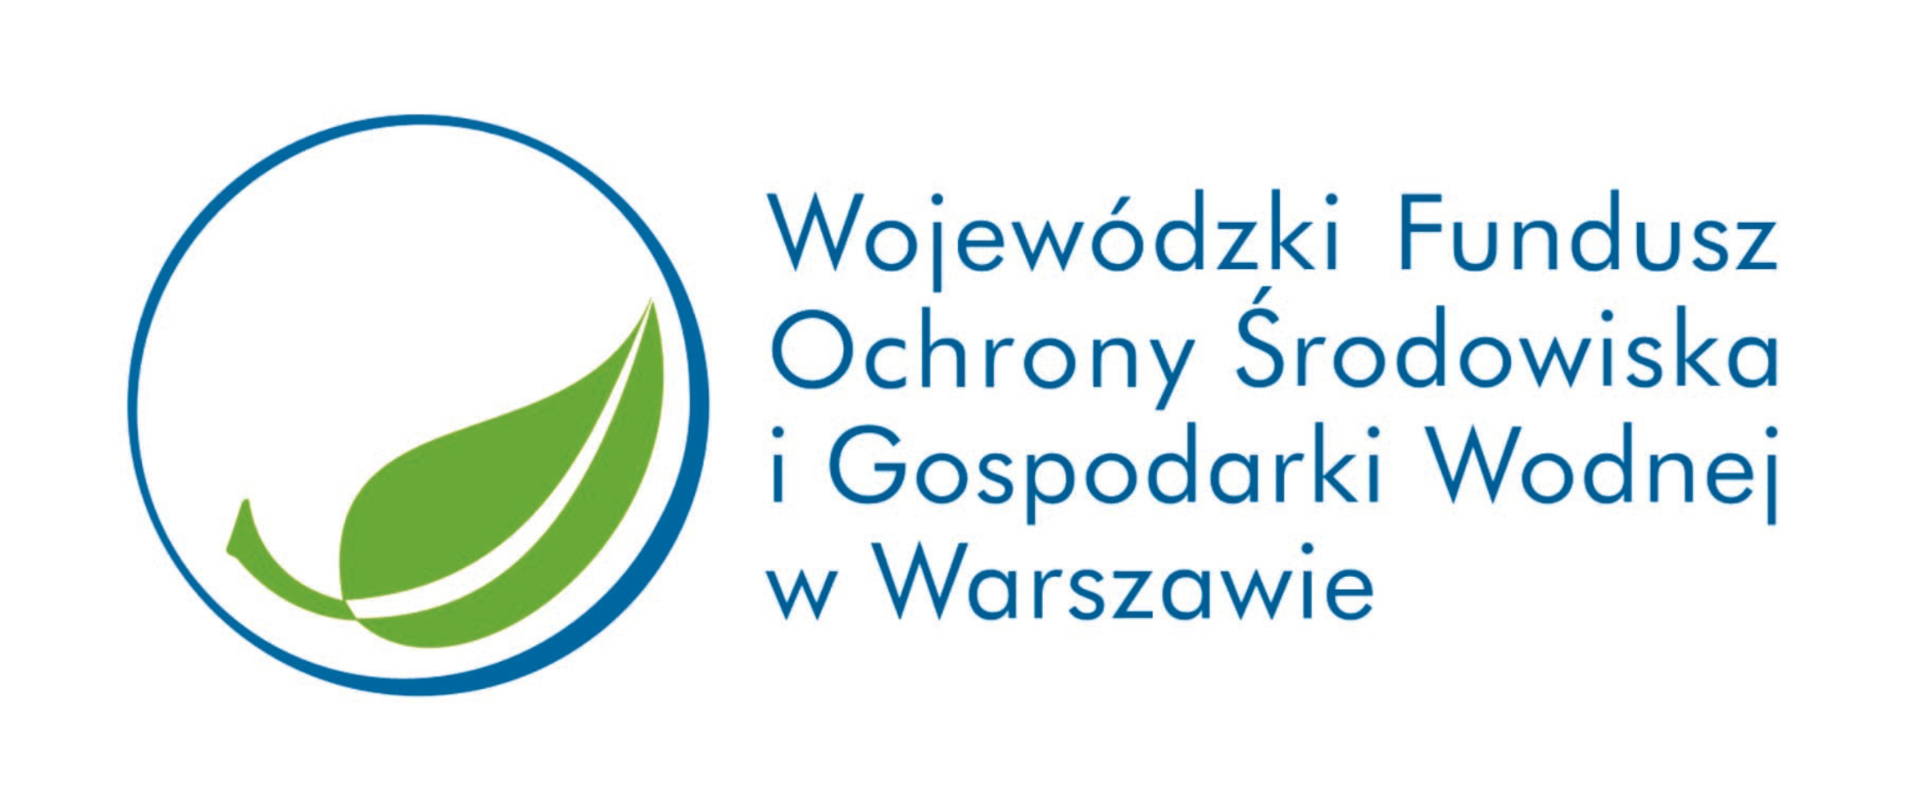 Liść w kole i tekst Wojewódzki Fundusz Ochrony Środowiska i Gospodarki Wodnej w Warszawie